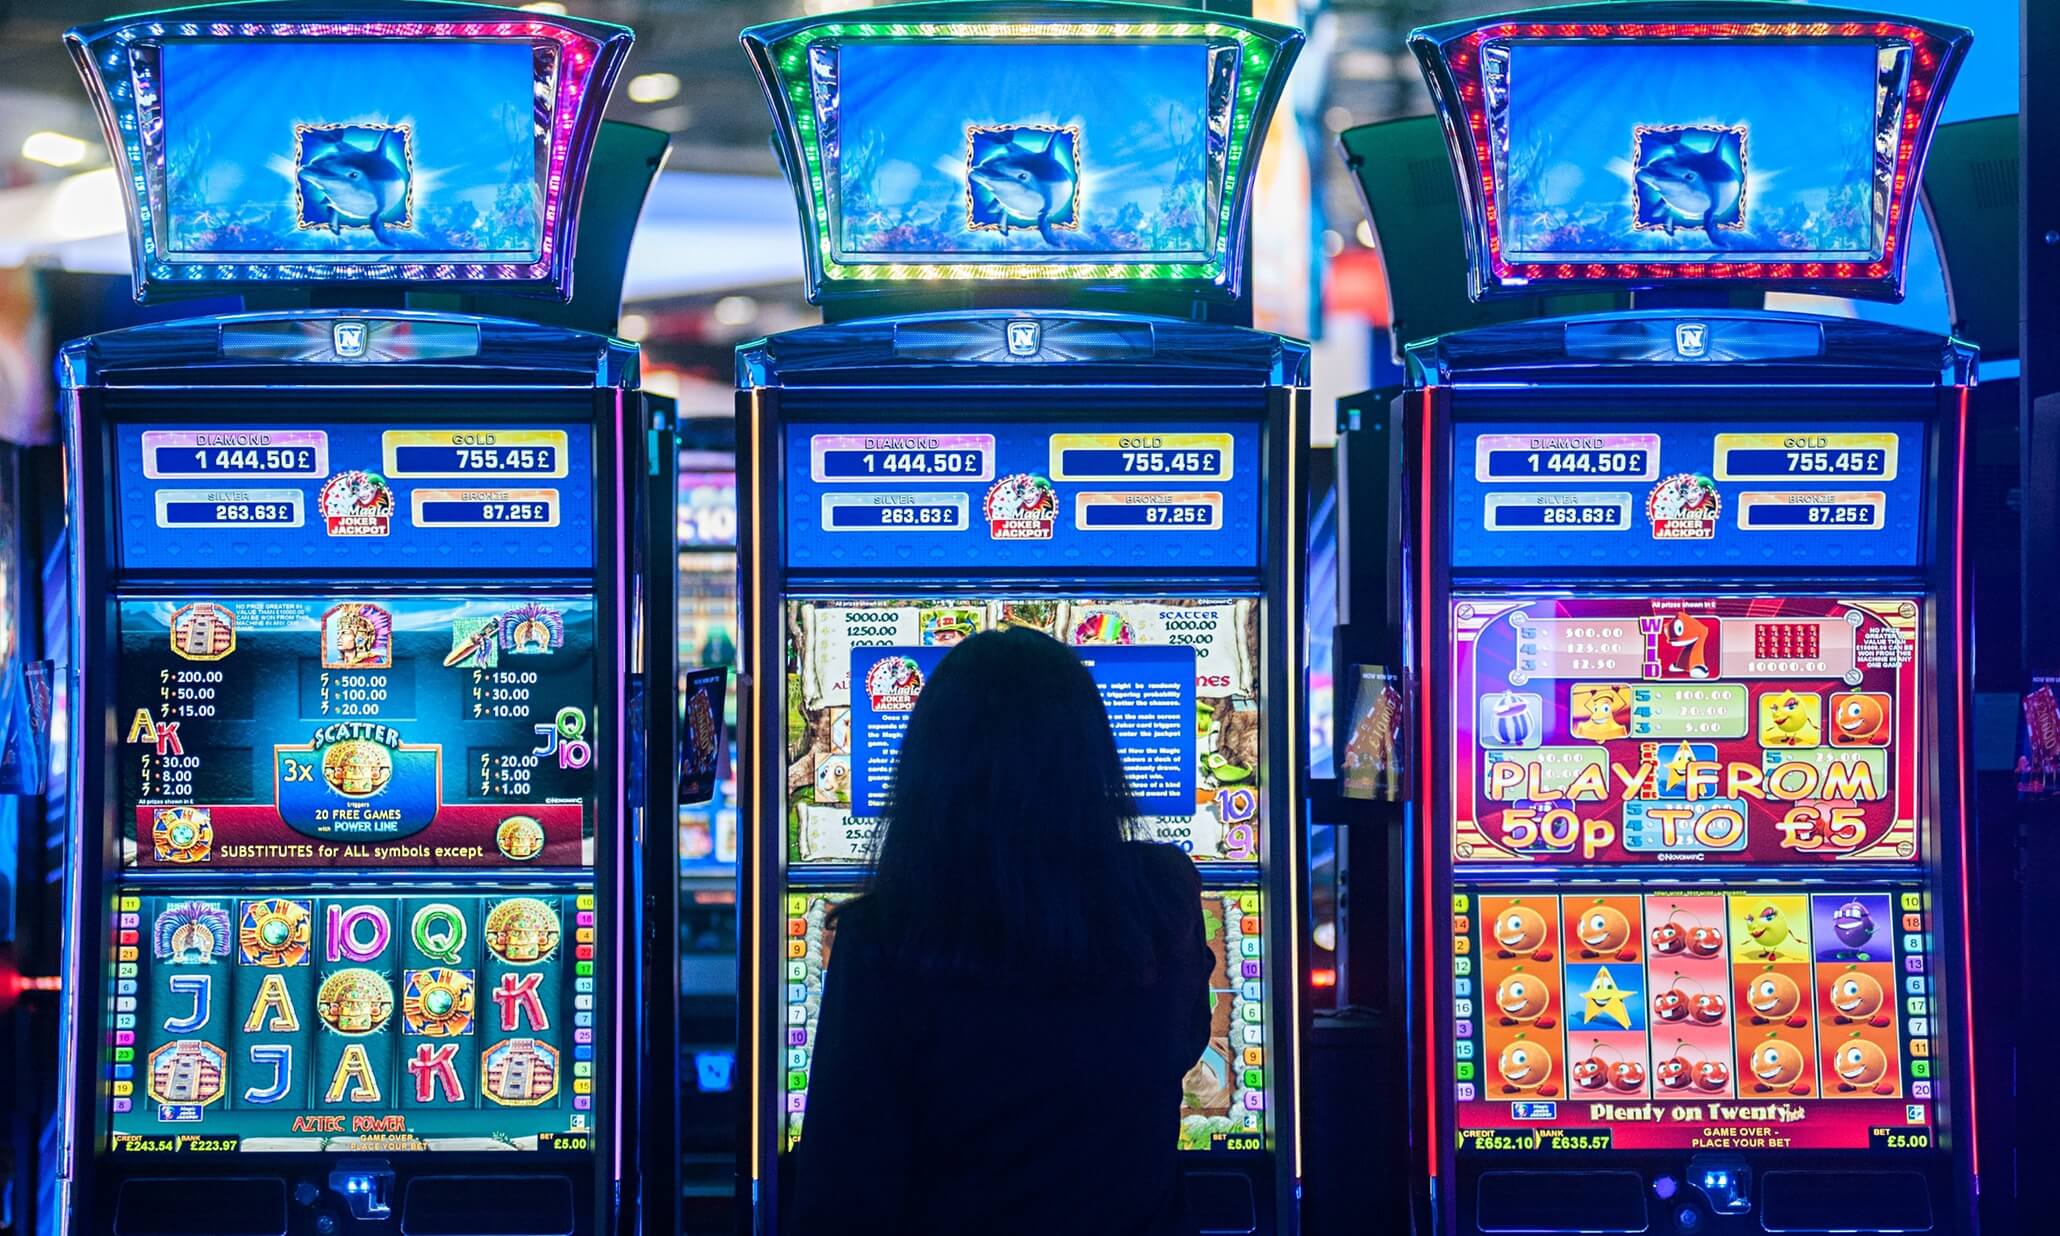 Slot-machine e scommesse, Isola delle Femmine è la meno virtuosa del comprensorio